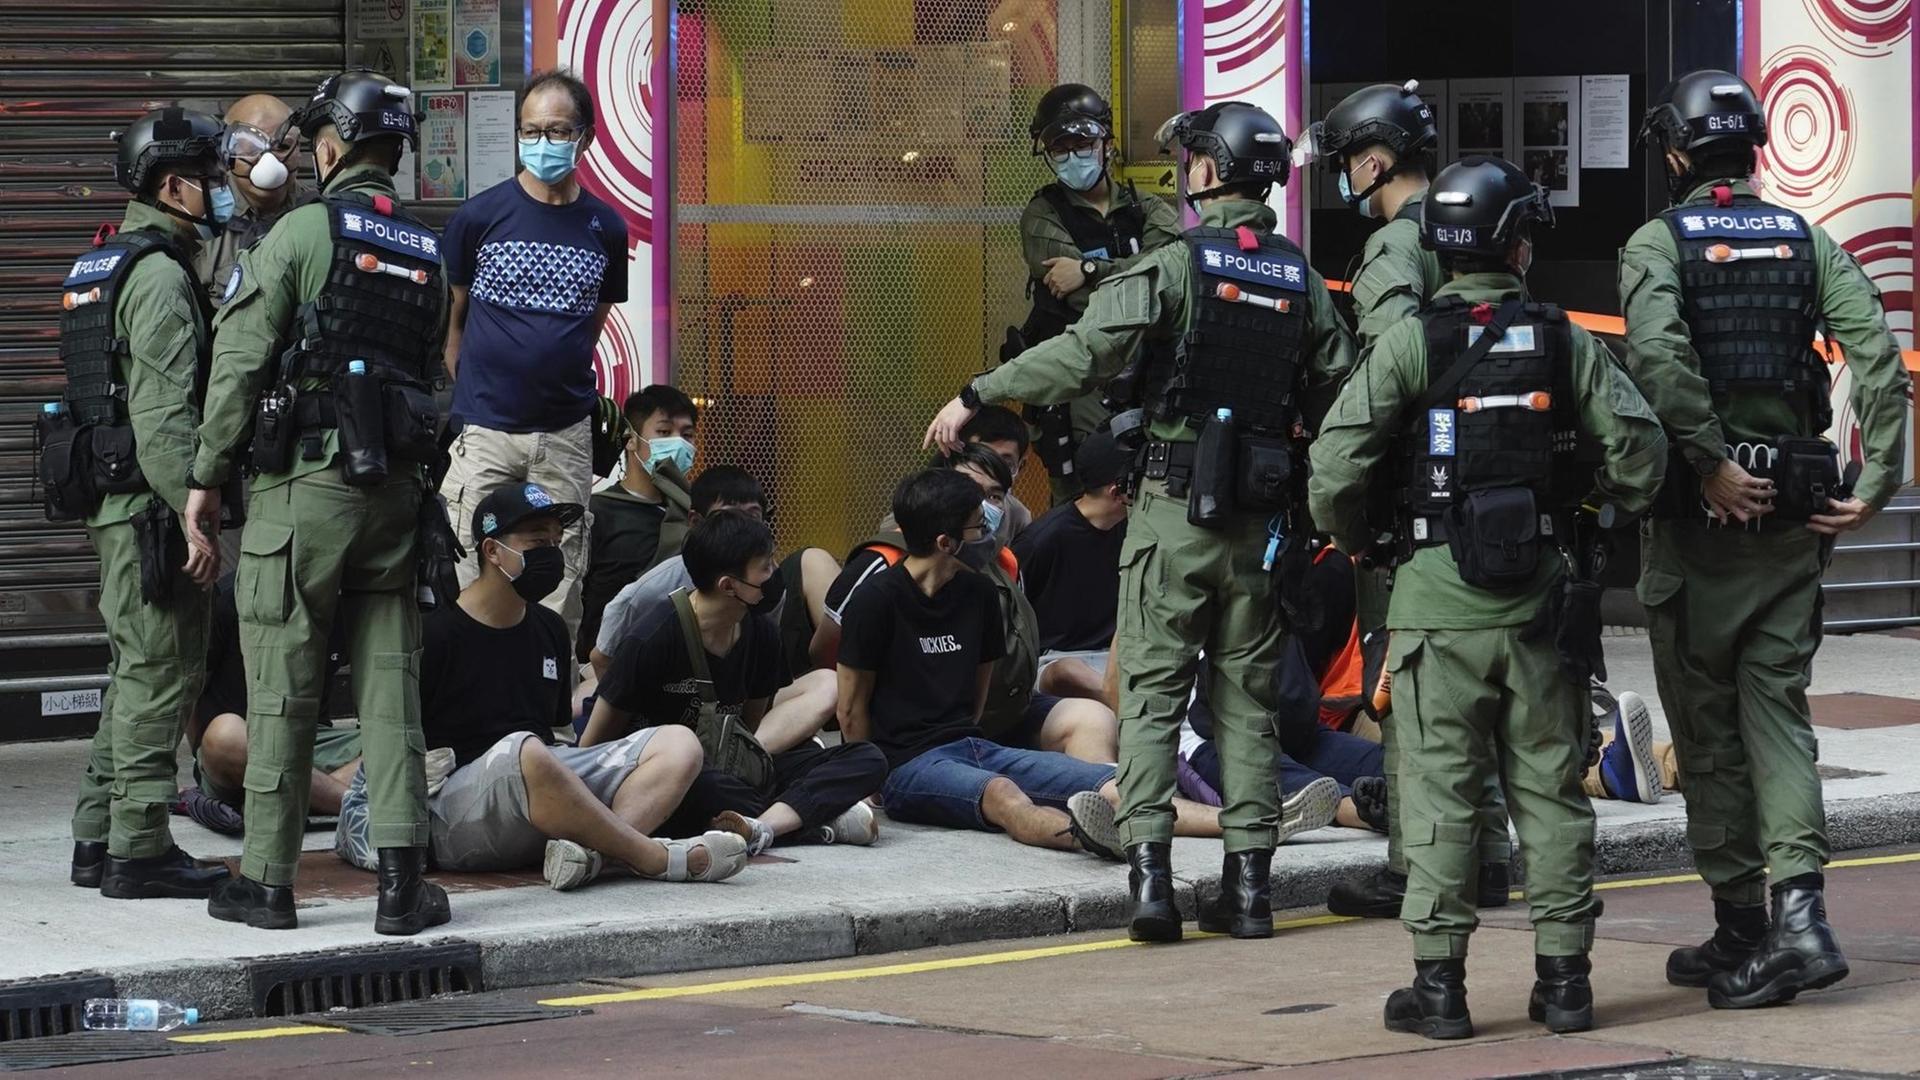 Polizisten in Hongkong nehmen Demonstranten fest, die auf dem Bürgersteig sitzen.